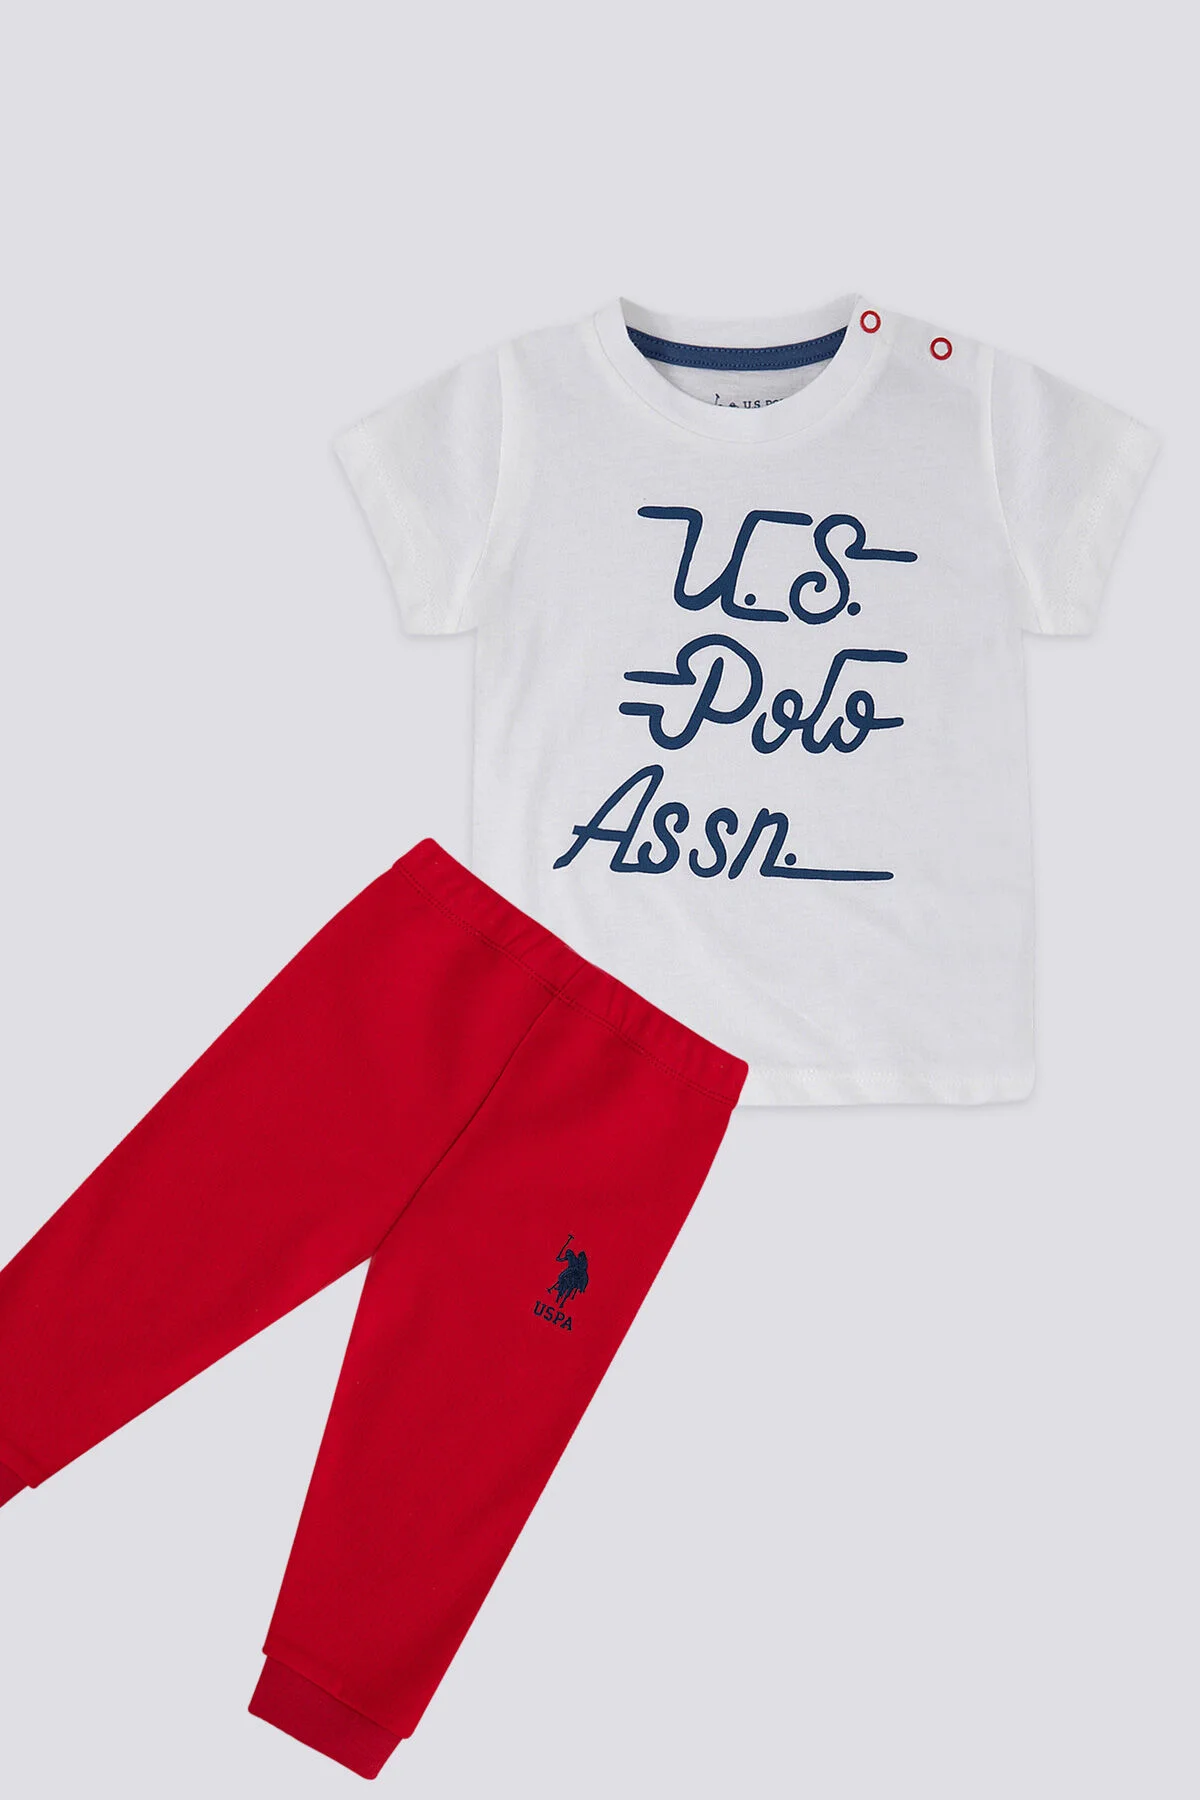 U.S. Polo Erkek Bebek Kısa Kol 2'Li Takım 1166 Krem-Kırmızı